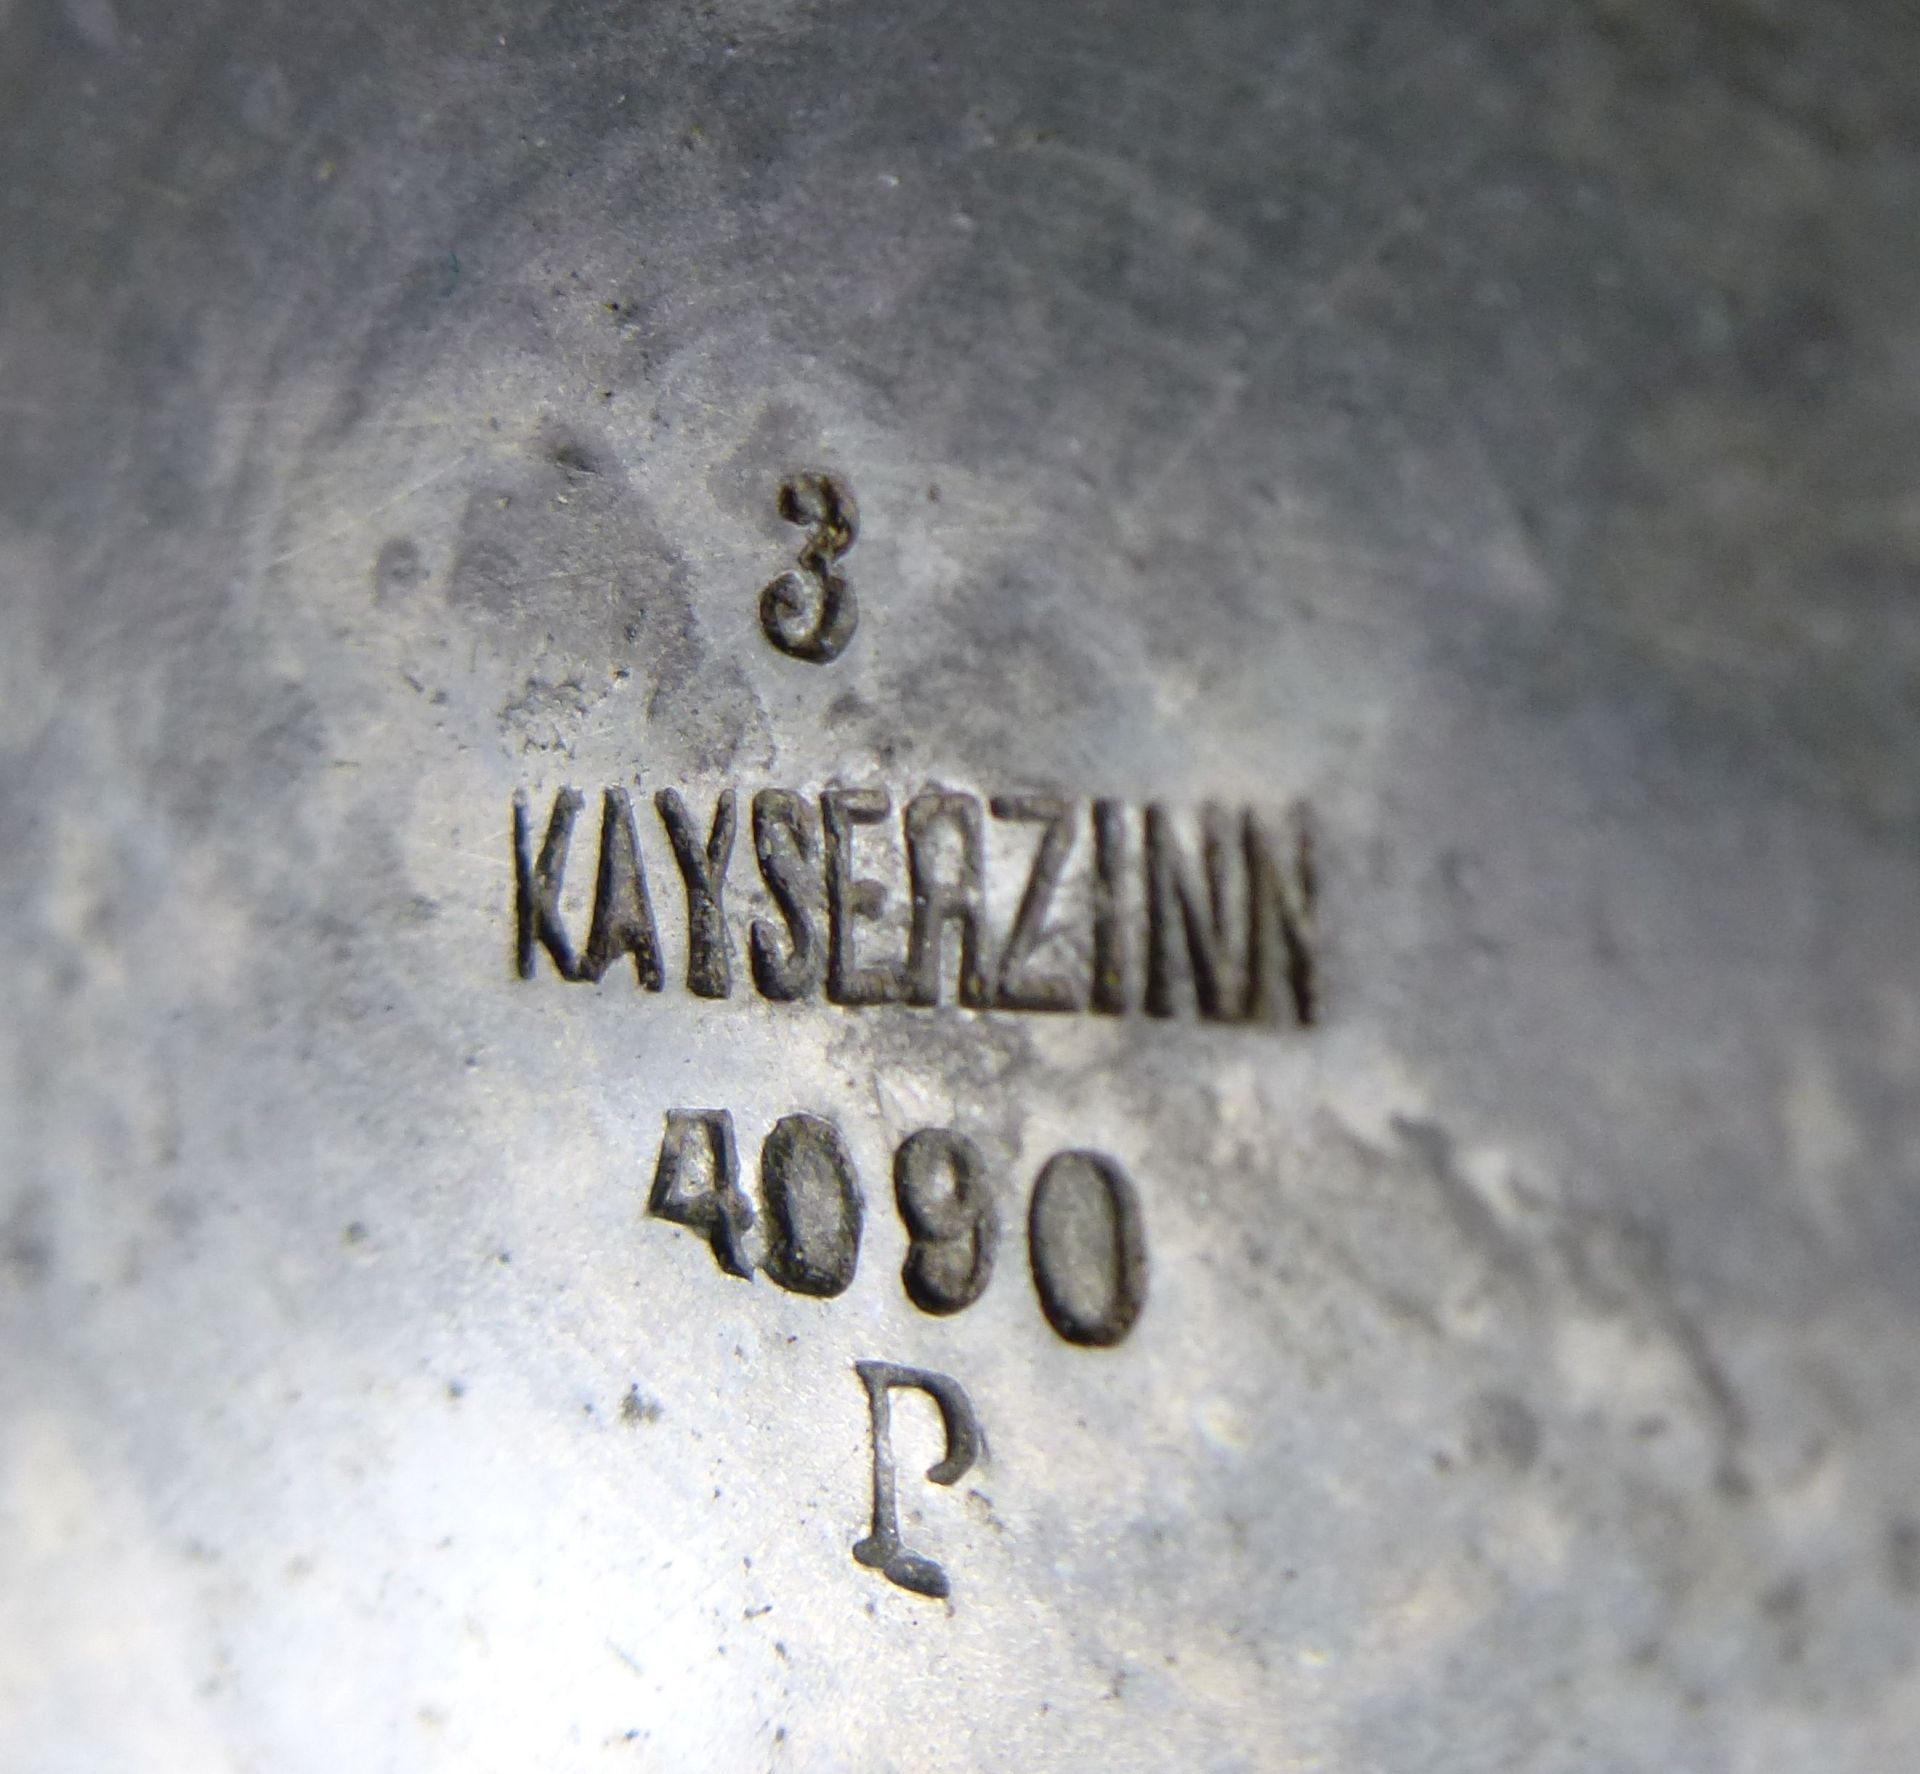 Paar Vasen, Kayserzinn, Modell 4090 - Image 2 of 2